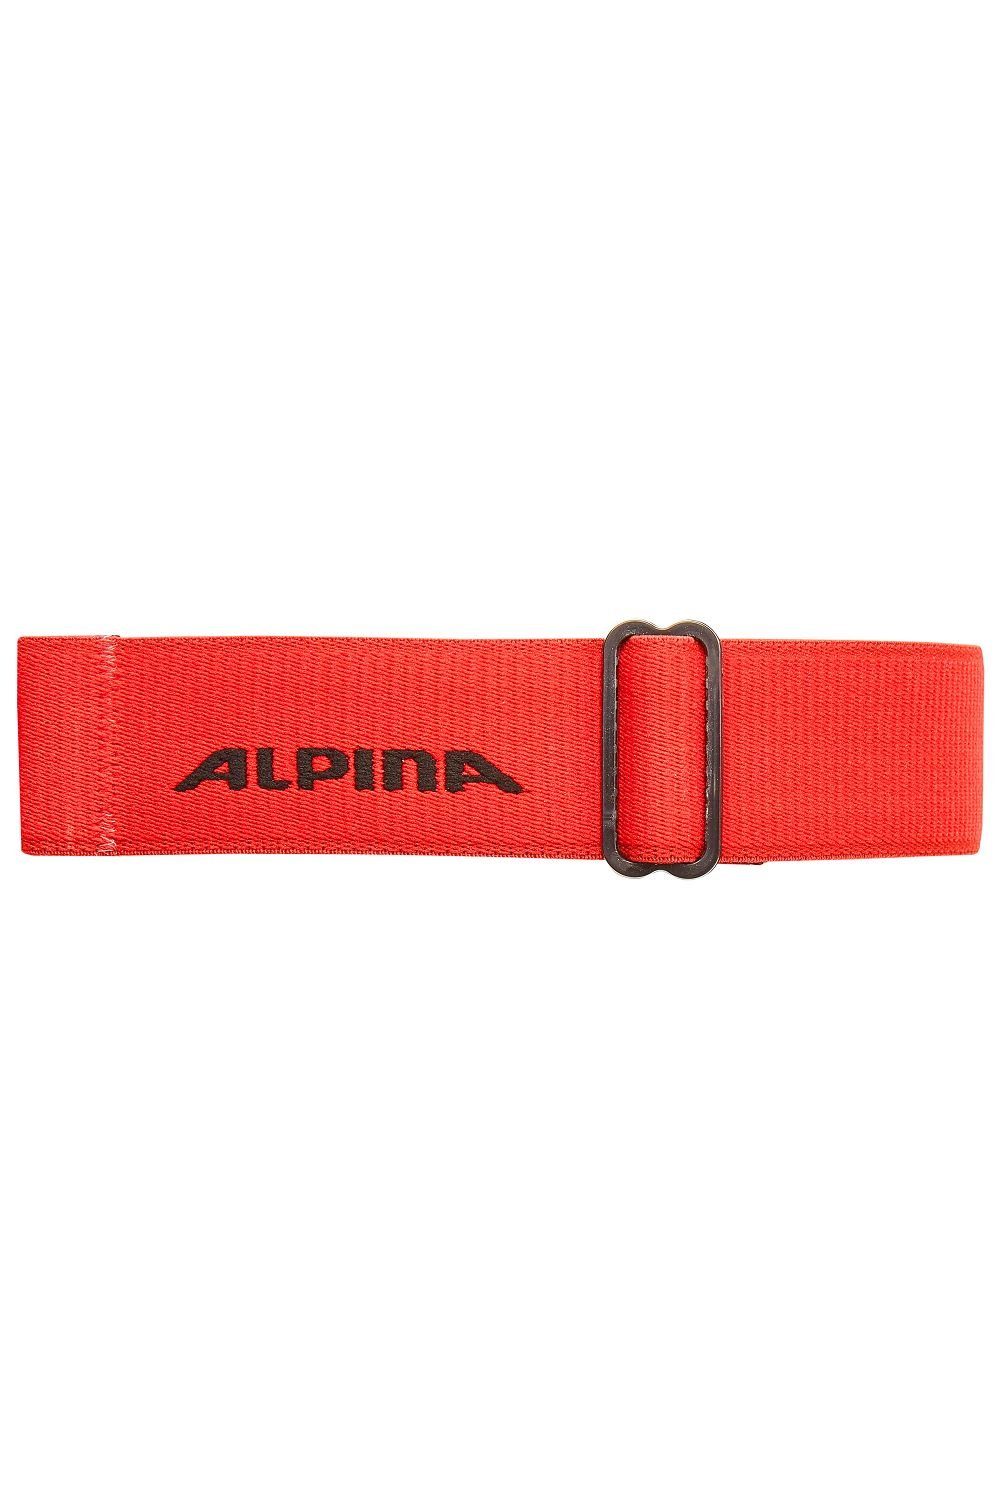 schwarz/rot Alpina onesize DH Alpina Sports Skibrille FREESPIRIT Skibrille